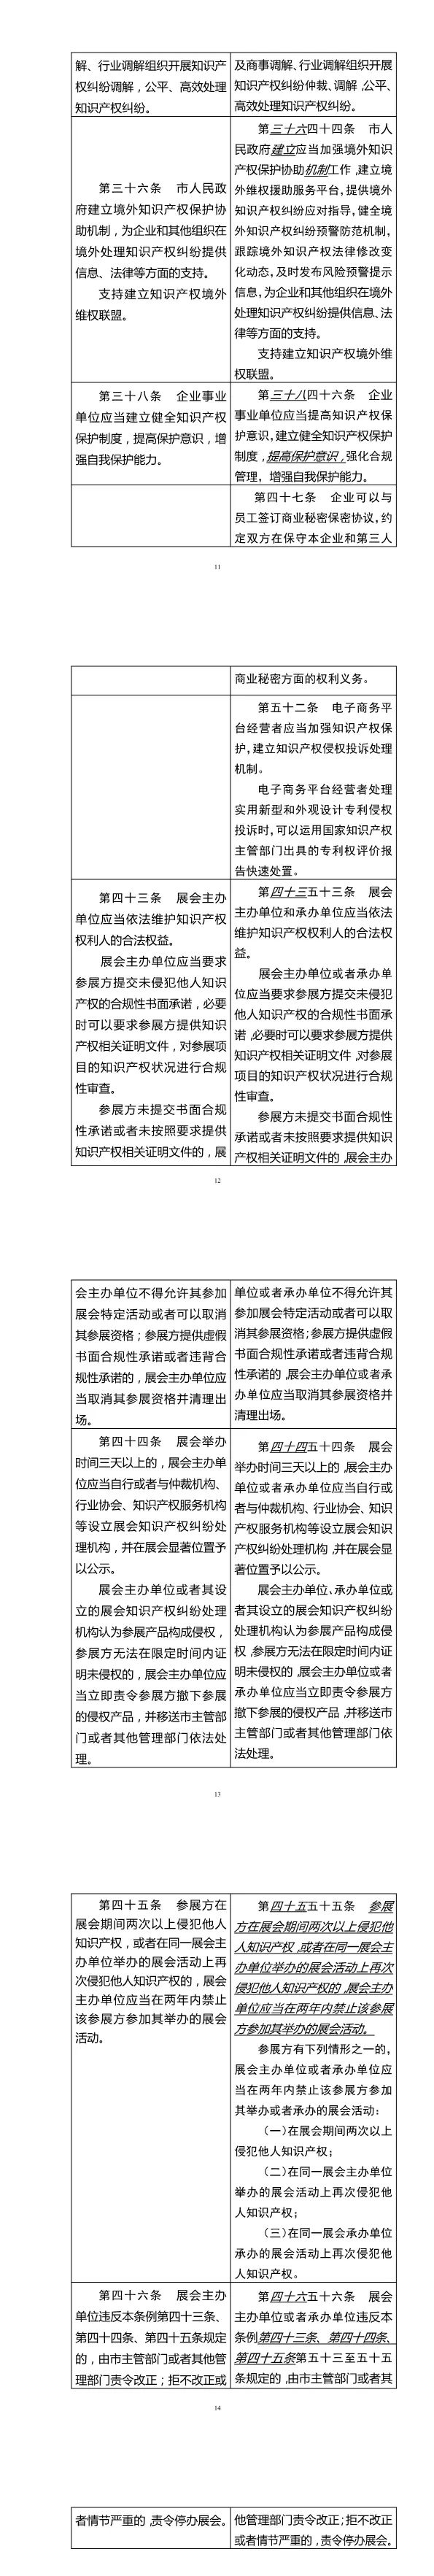 《深圳经济特区知识产权保护条例修正案（草案修改征求意见稿）》：外观设计类侵权案可集中快速审理